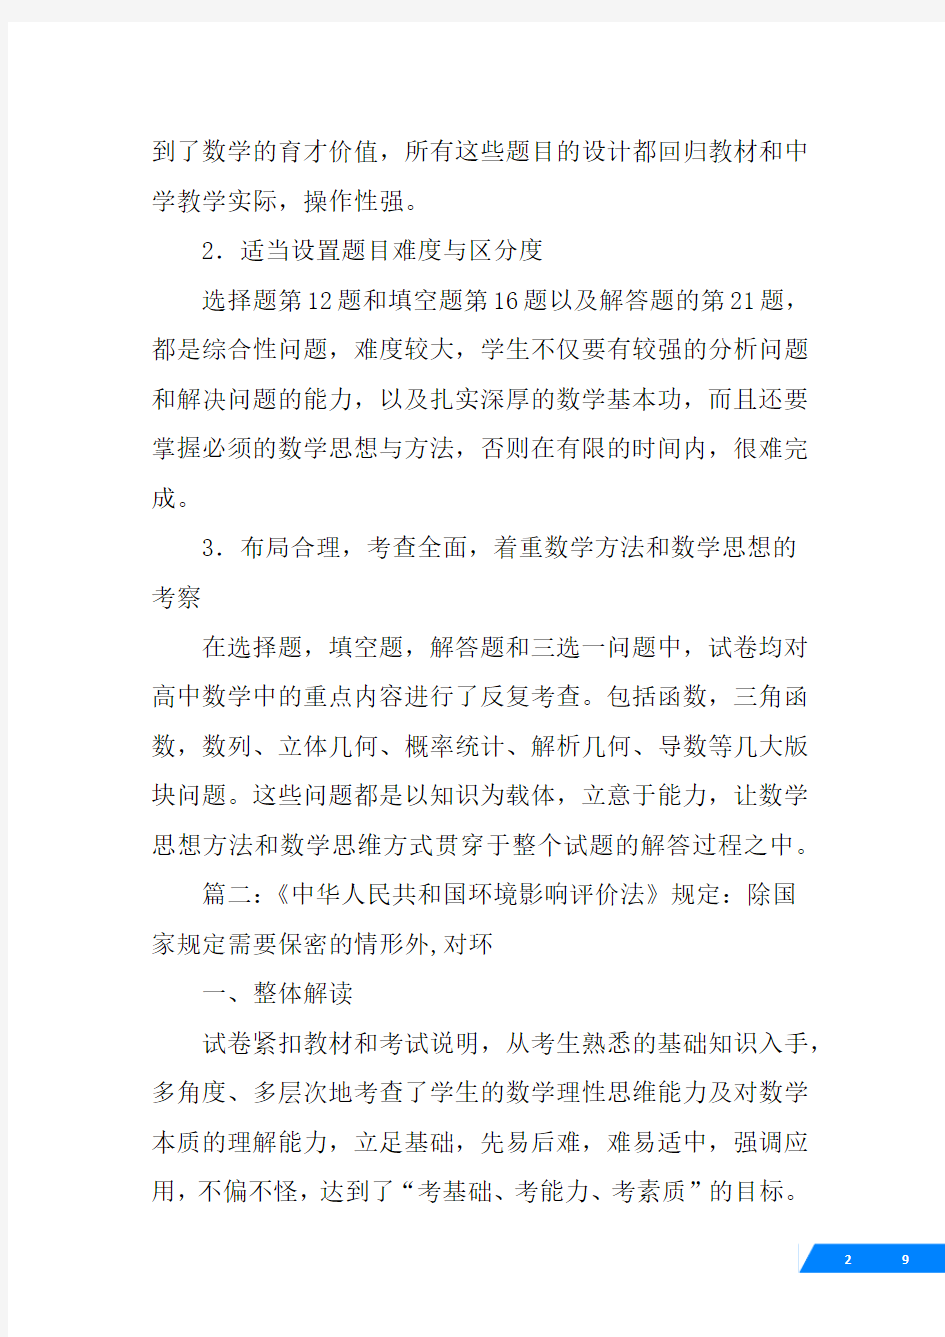 中华人民共和国行业标准,玻璃,环境影响评价规范